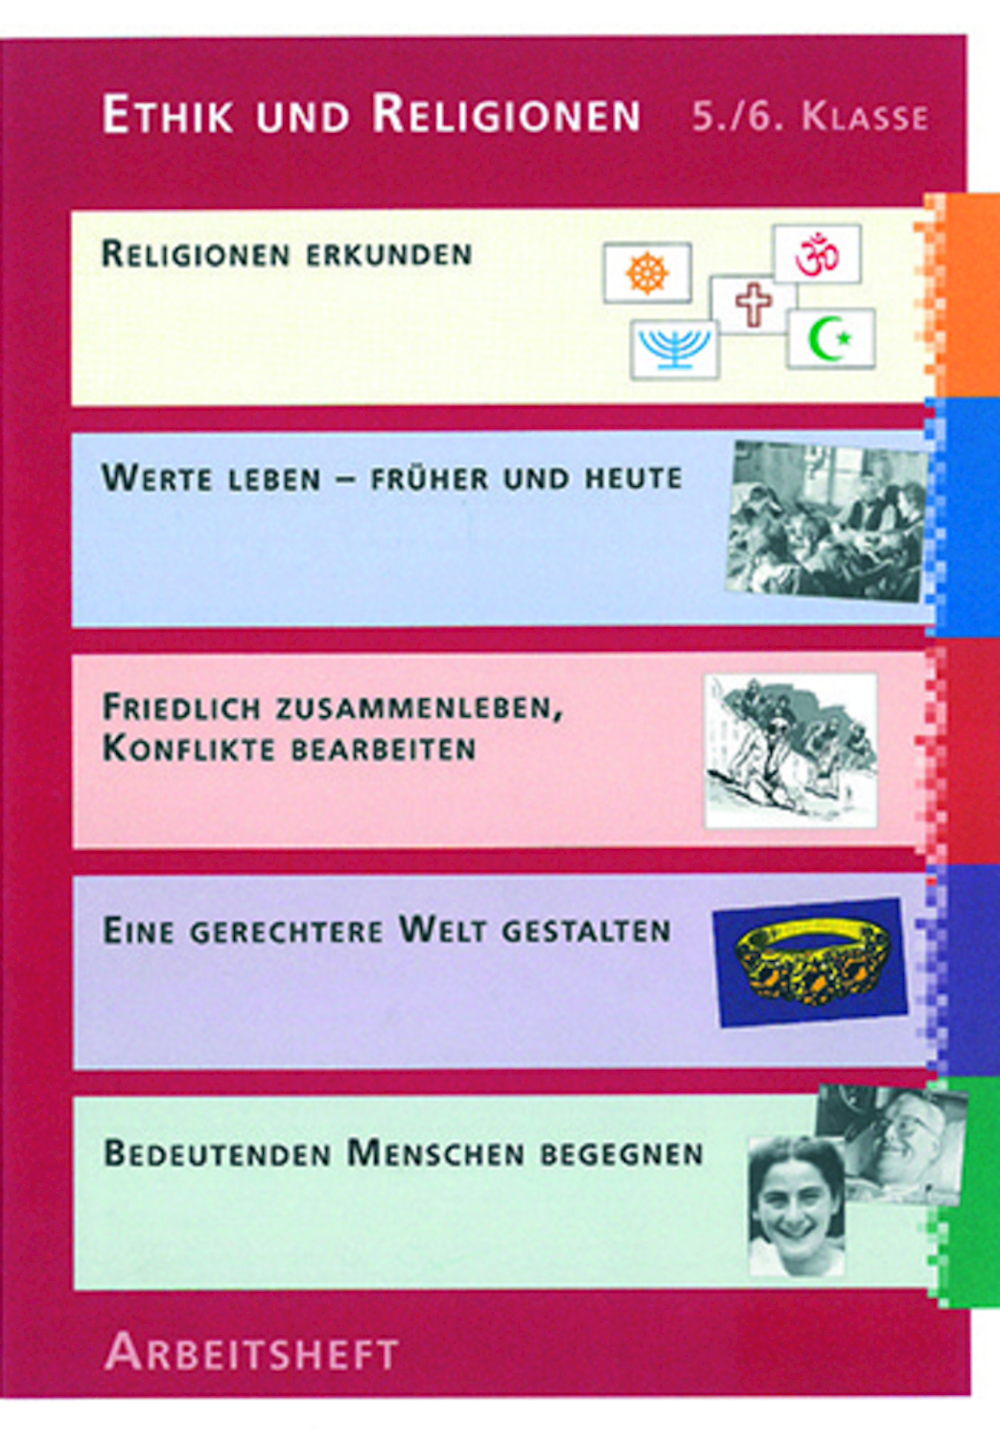 Ethik und Religionen 5./6. Klasse Schülerheft